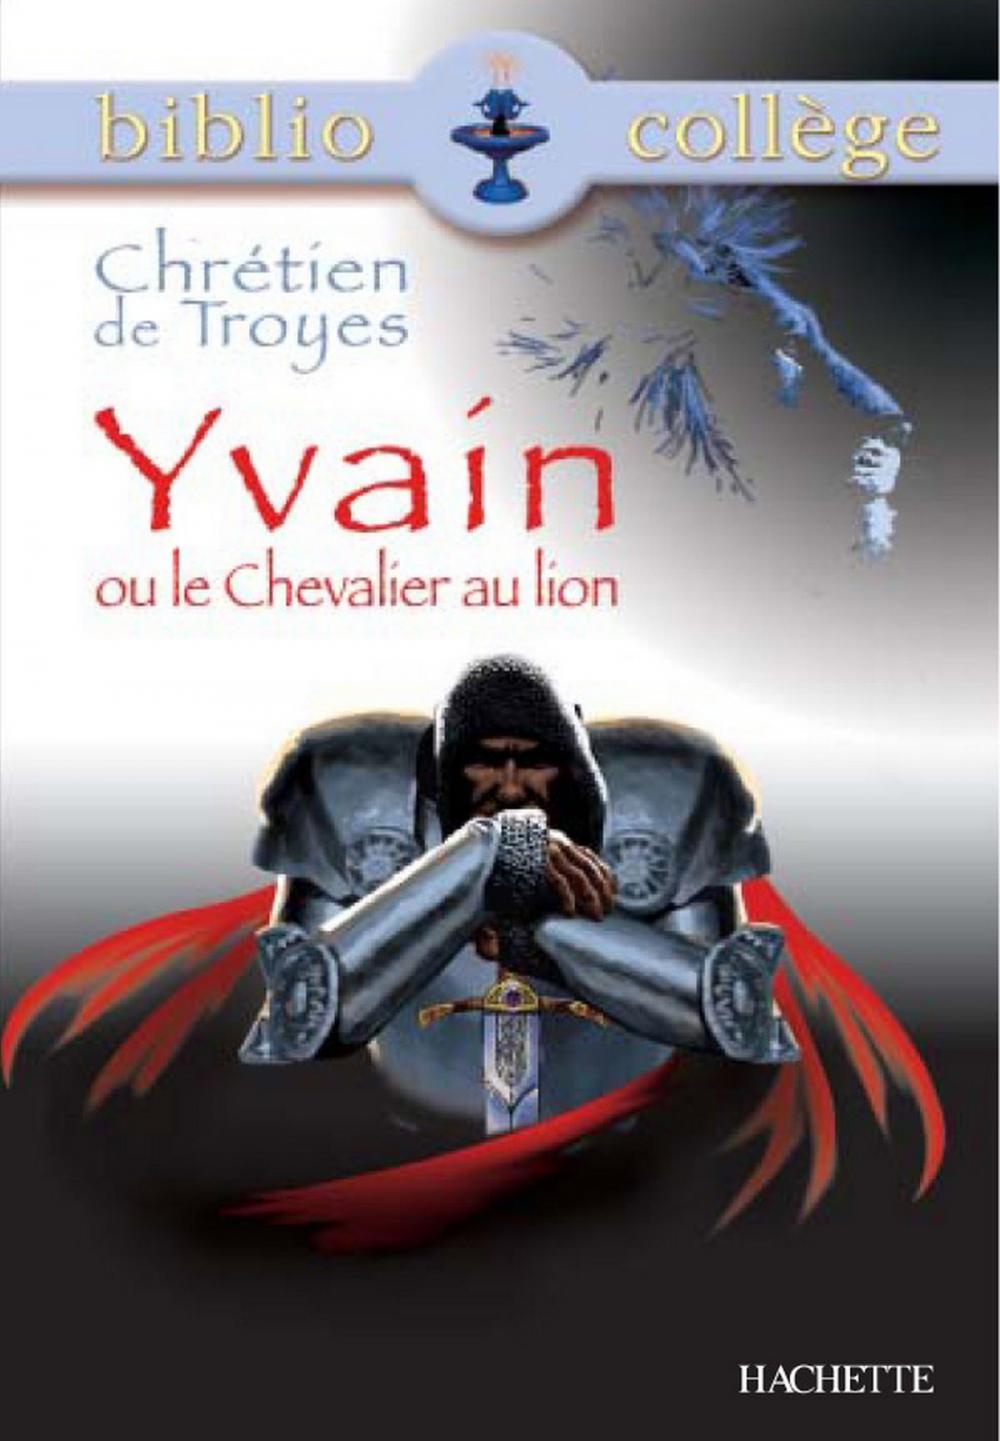 Big bigCover of Bibliocollège - Yvain ou le Chevalier au lion, Chrétien de Troyes